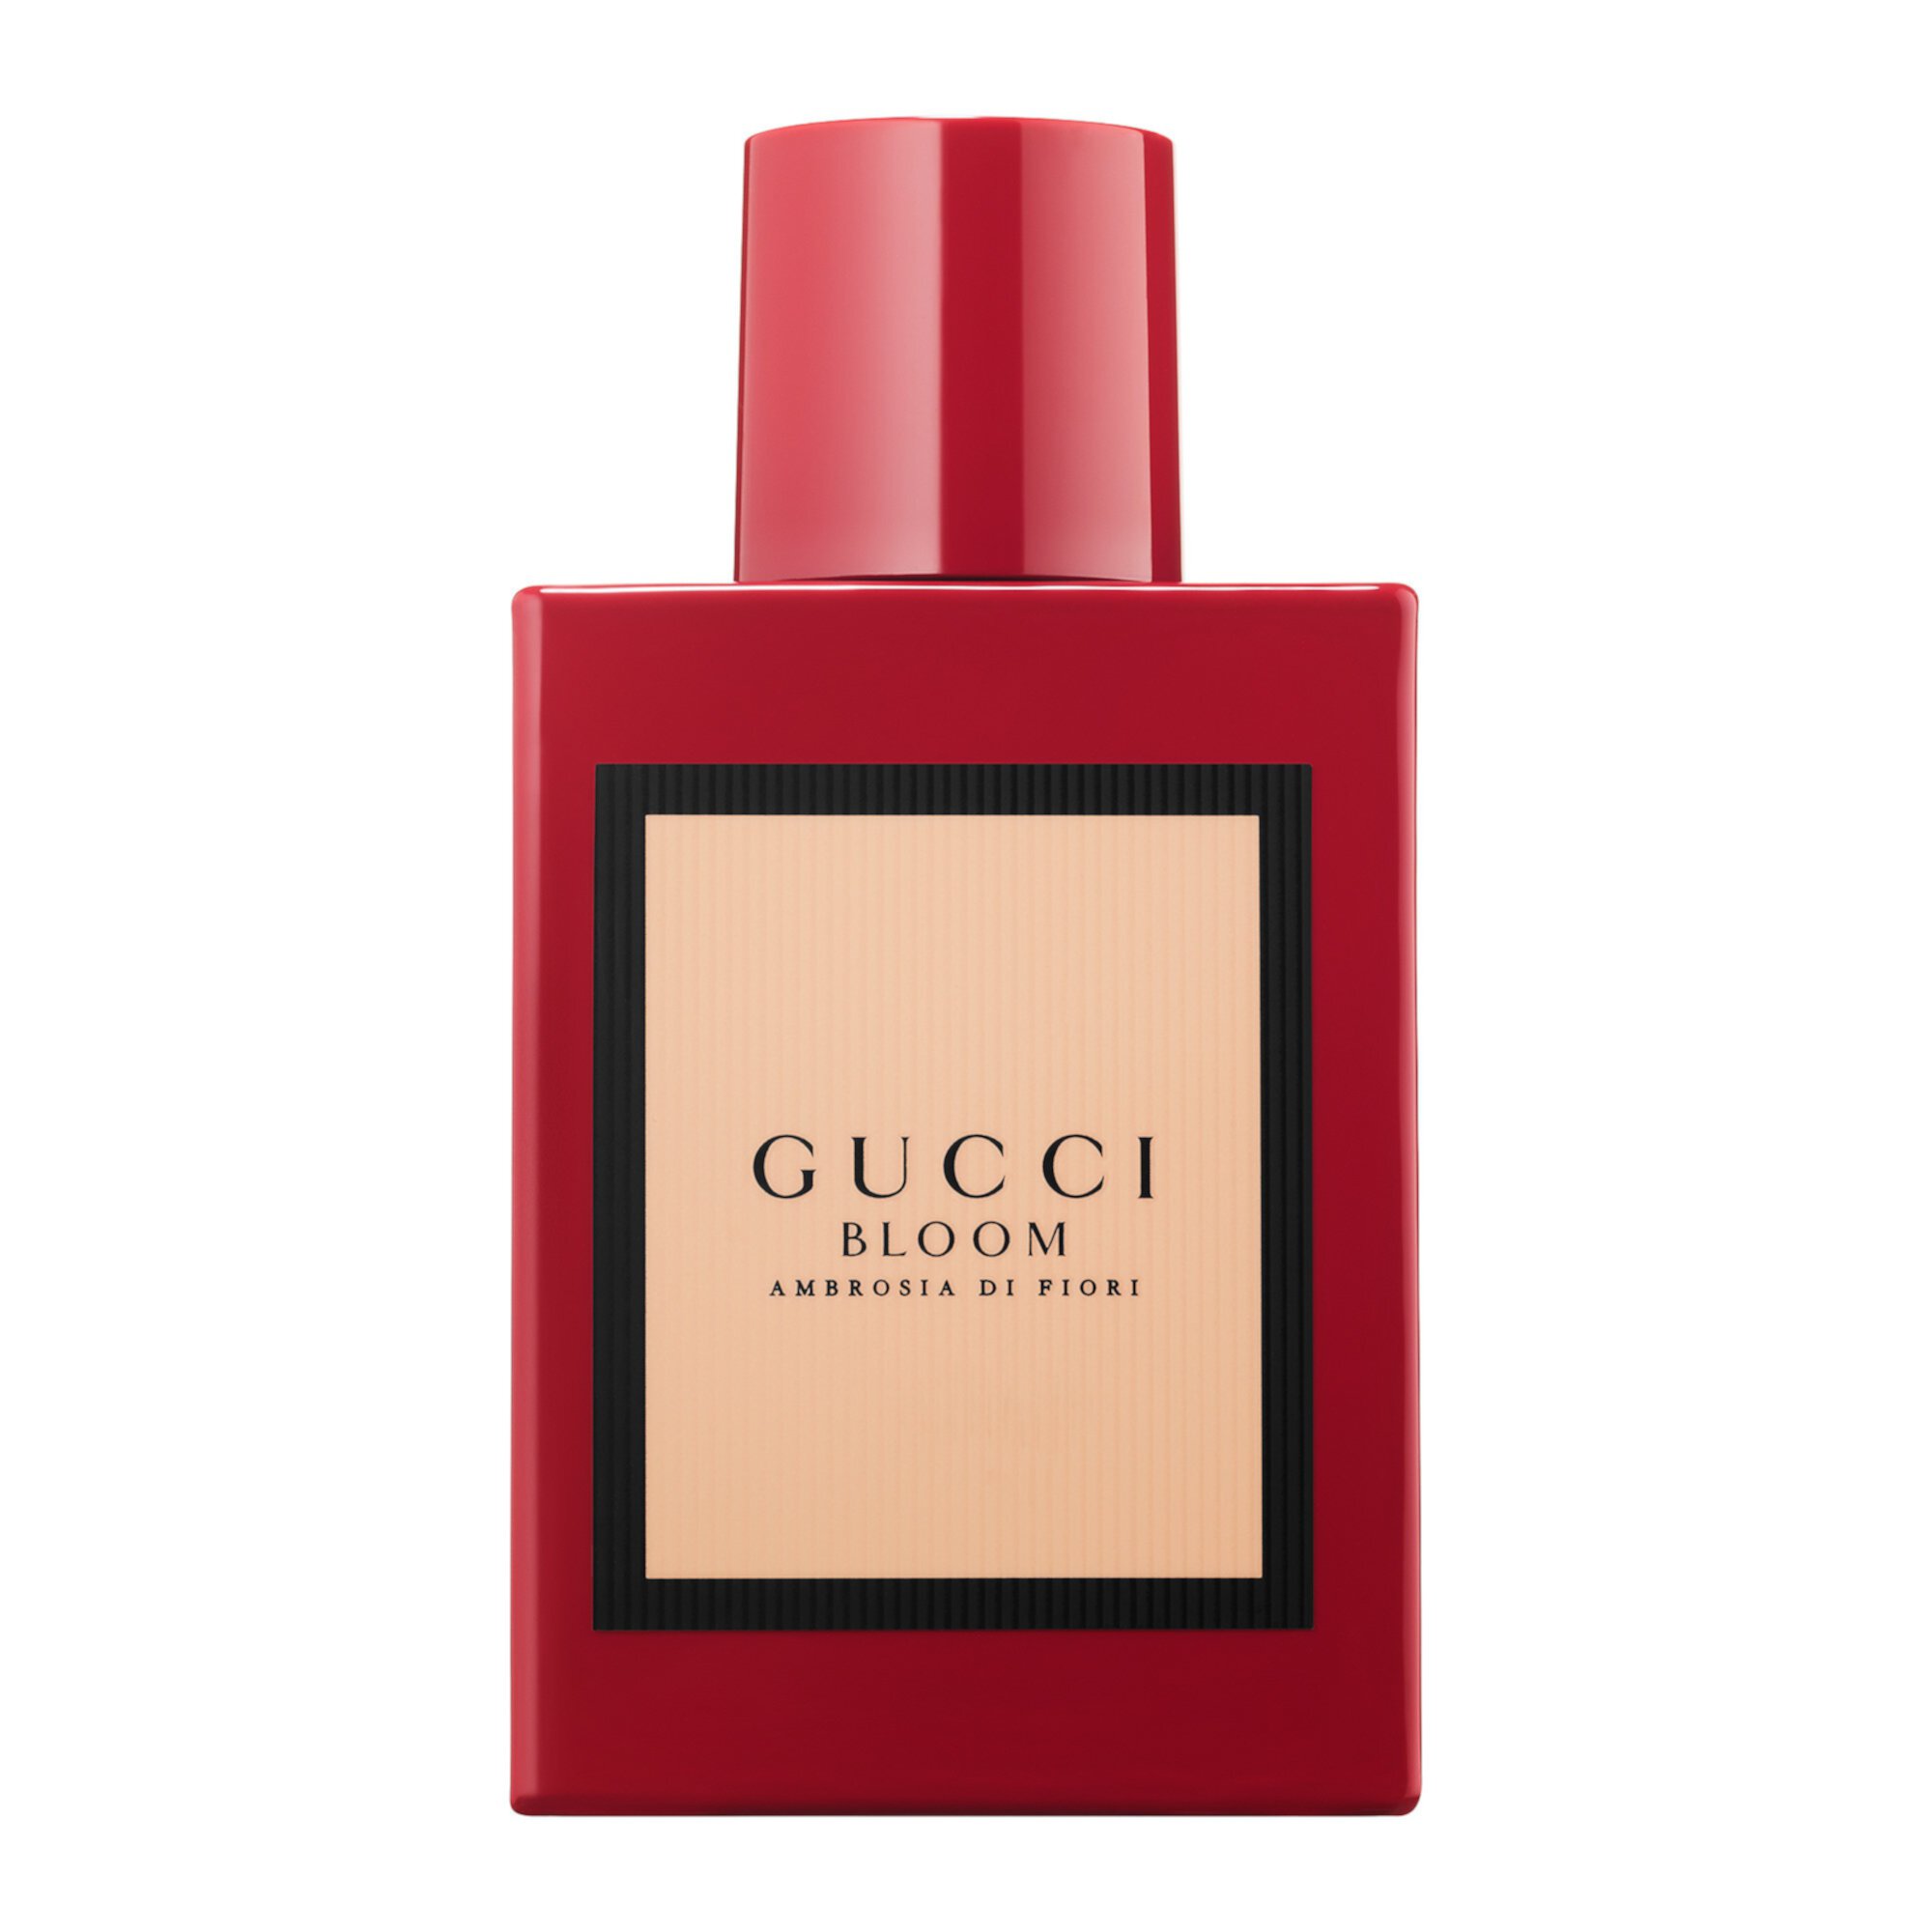 Gucci Bloom Ambrosia di Fiori Eau de Parfum Intense For Her GUCCI